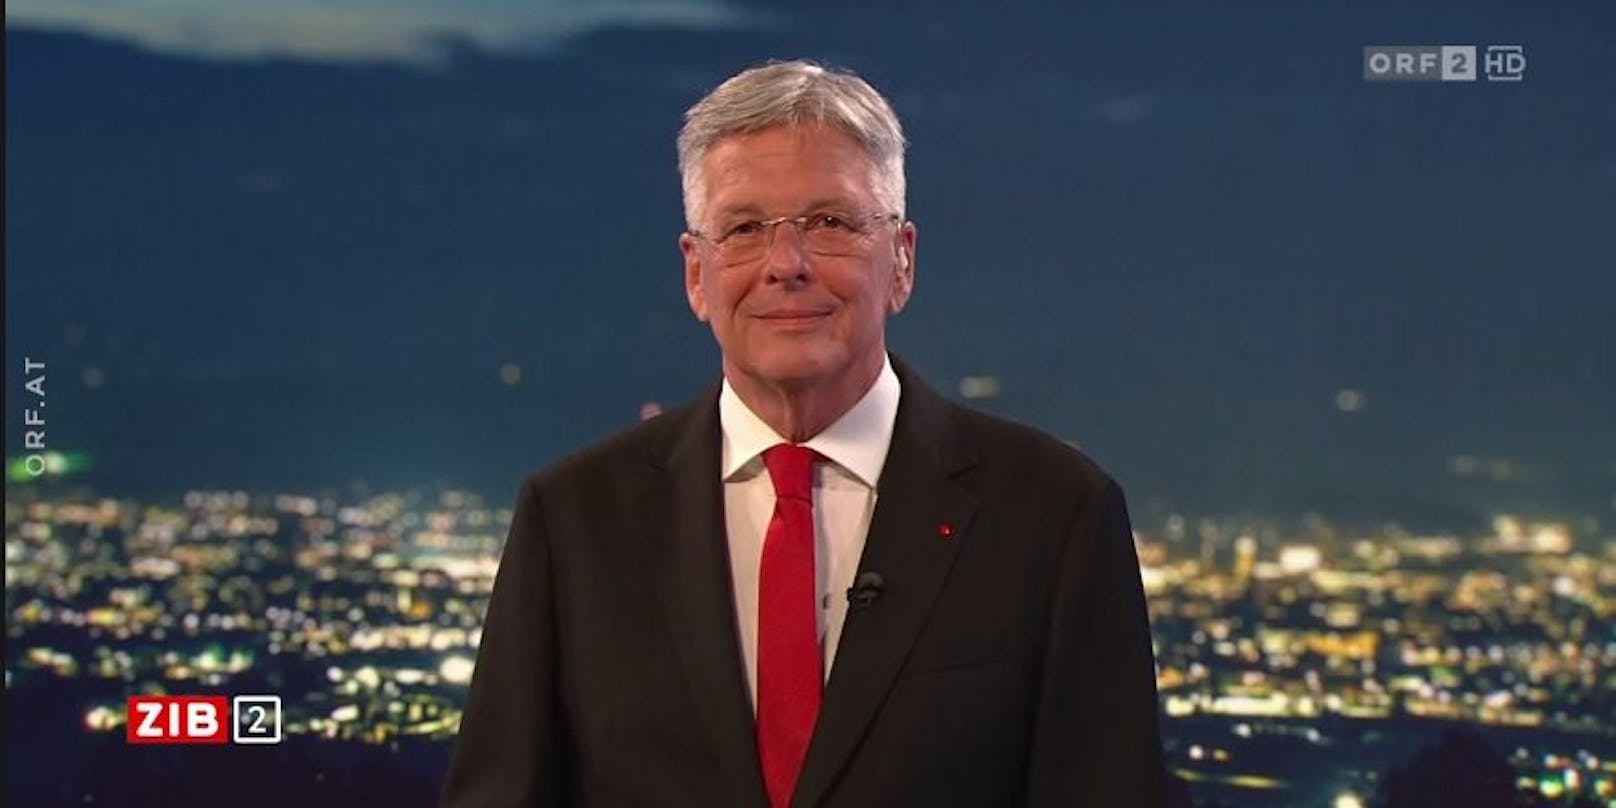 Kärntens Landeshauptmann Peter Kaiser (SPÖ) zum Streit um den Finanzausgleich in der ORF-"ZIB2".